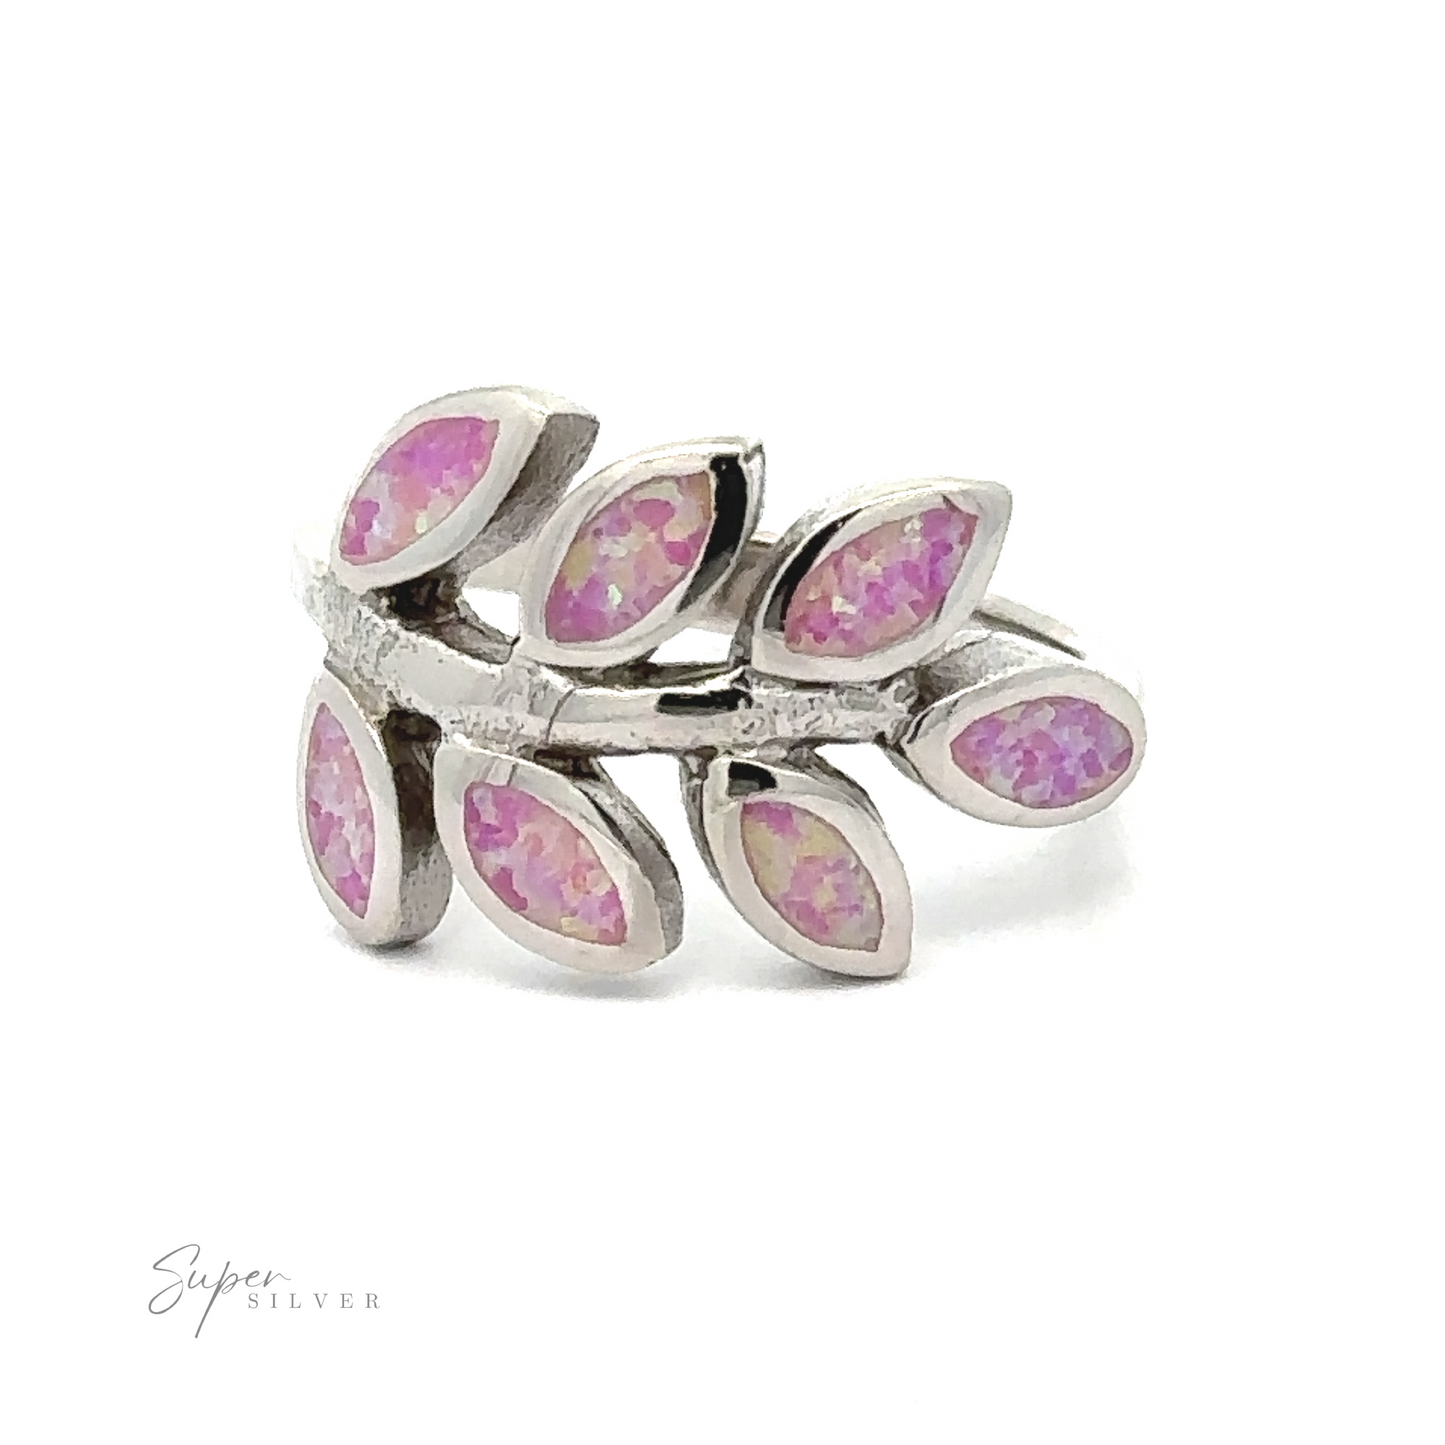 
                  
                    Lab-Created Opal Fern Ring with lab-created pink opal inlays arranged in a fern leaf pattern.
                  
                